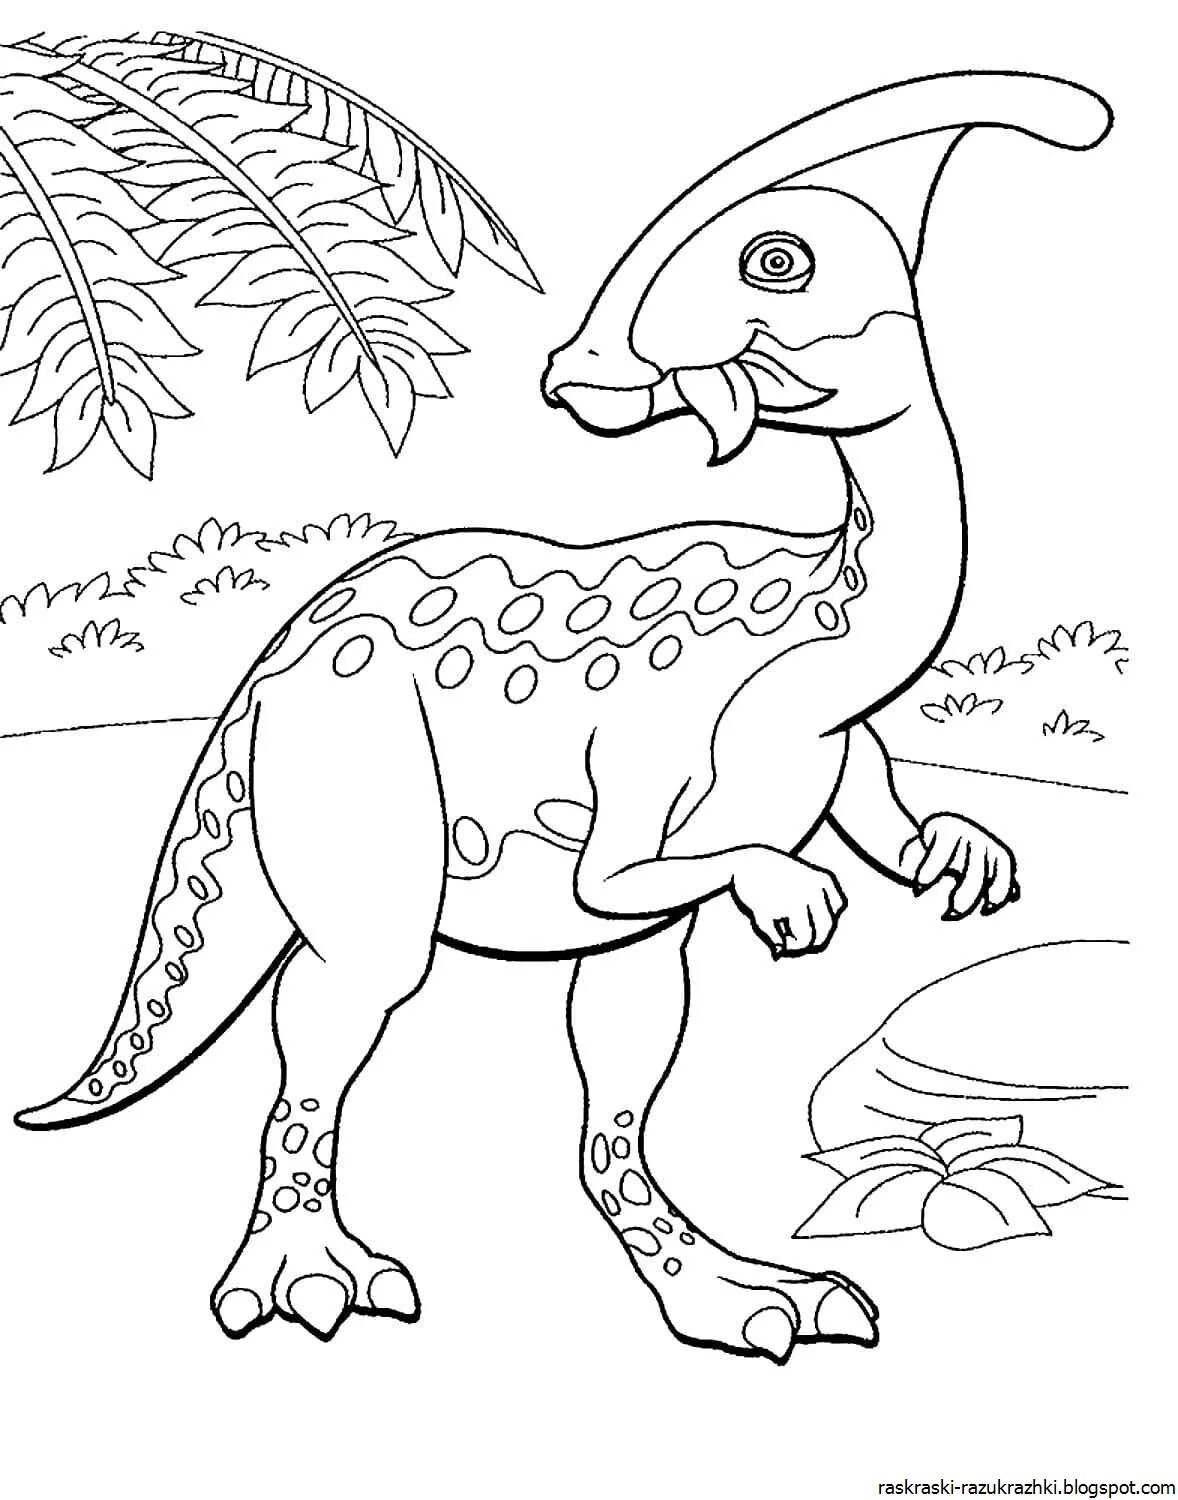 Раскраски динозавры а4. Дино раскраска динозавры. Перри Паразауролоф. Динозавр раскраска для детей. Динозаврики раскраска для детей.